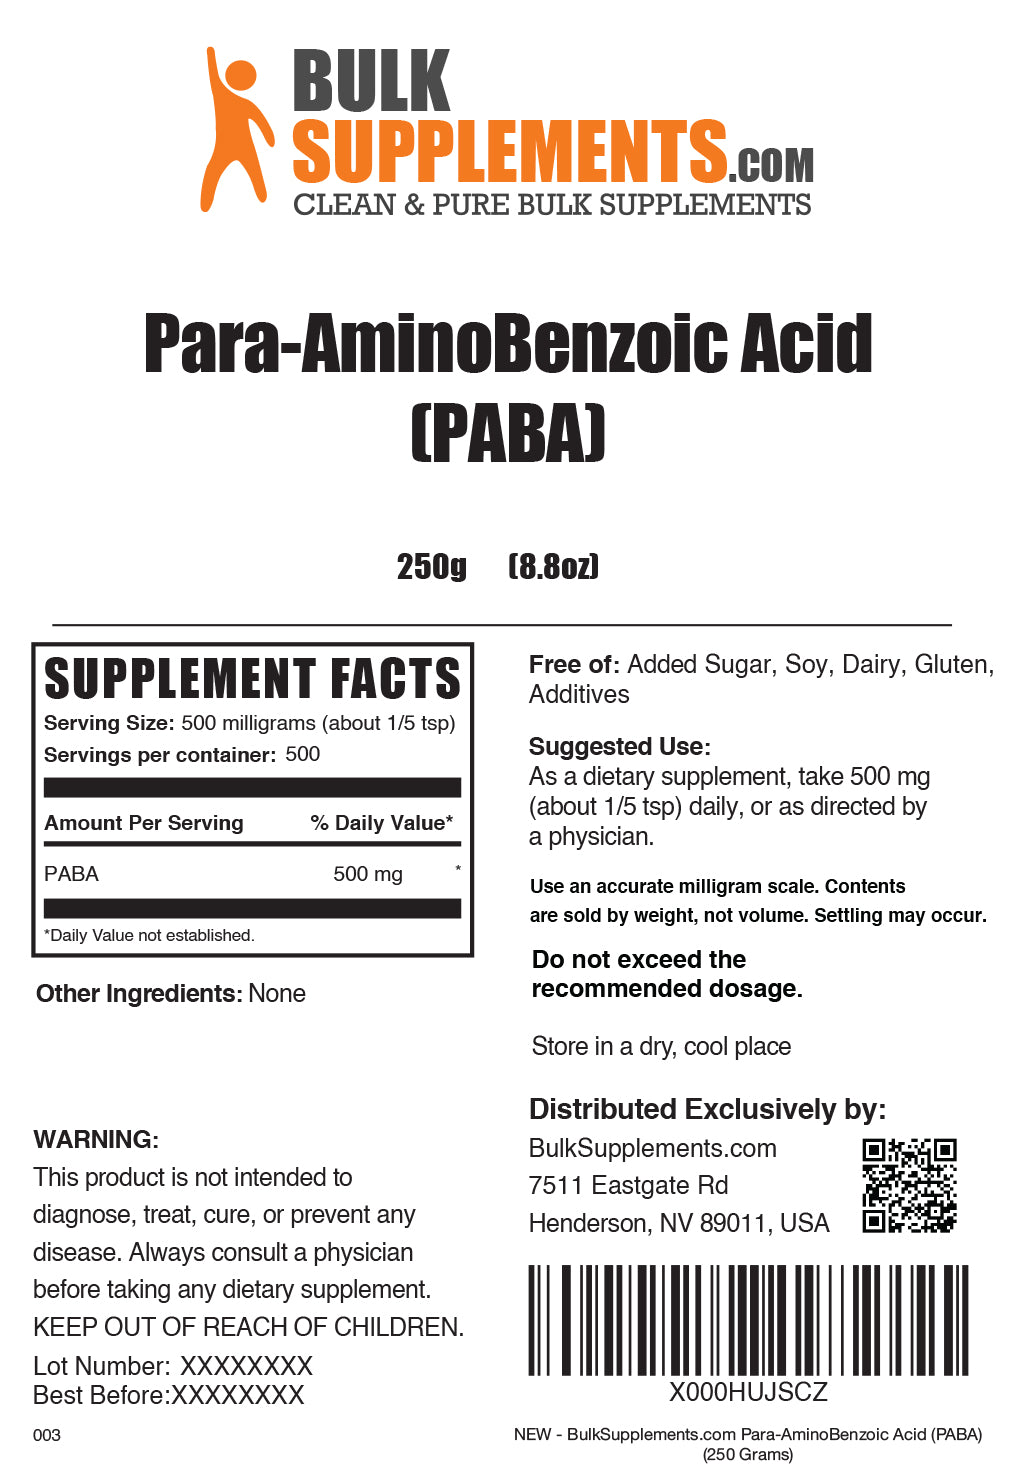 Para-Aminobenzoic Acid (PABA) powder label 250g